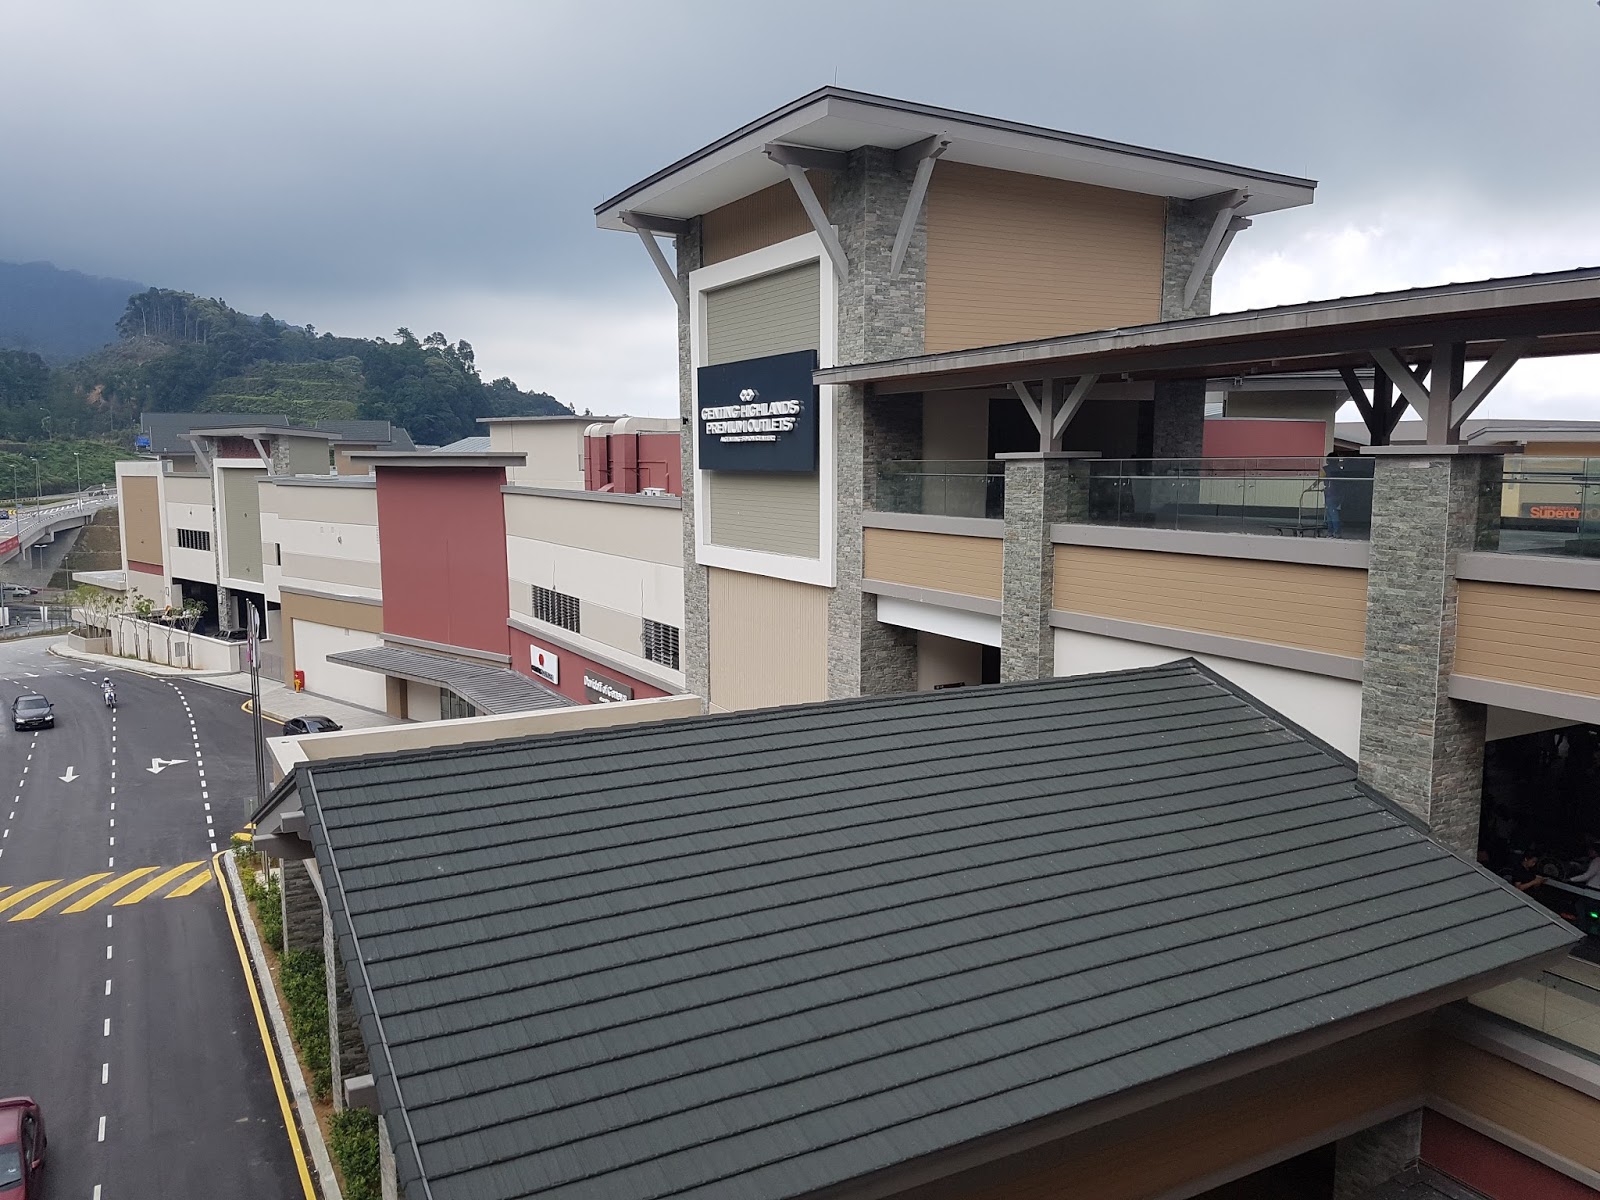 jalanjalan: Genting Highlands Premium Outlets, Pahang